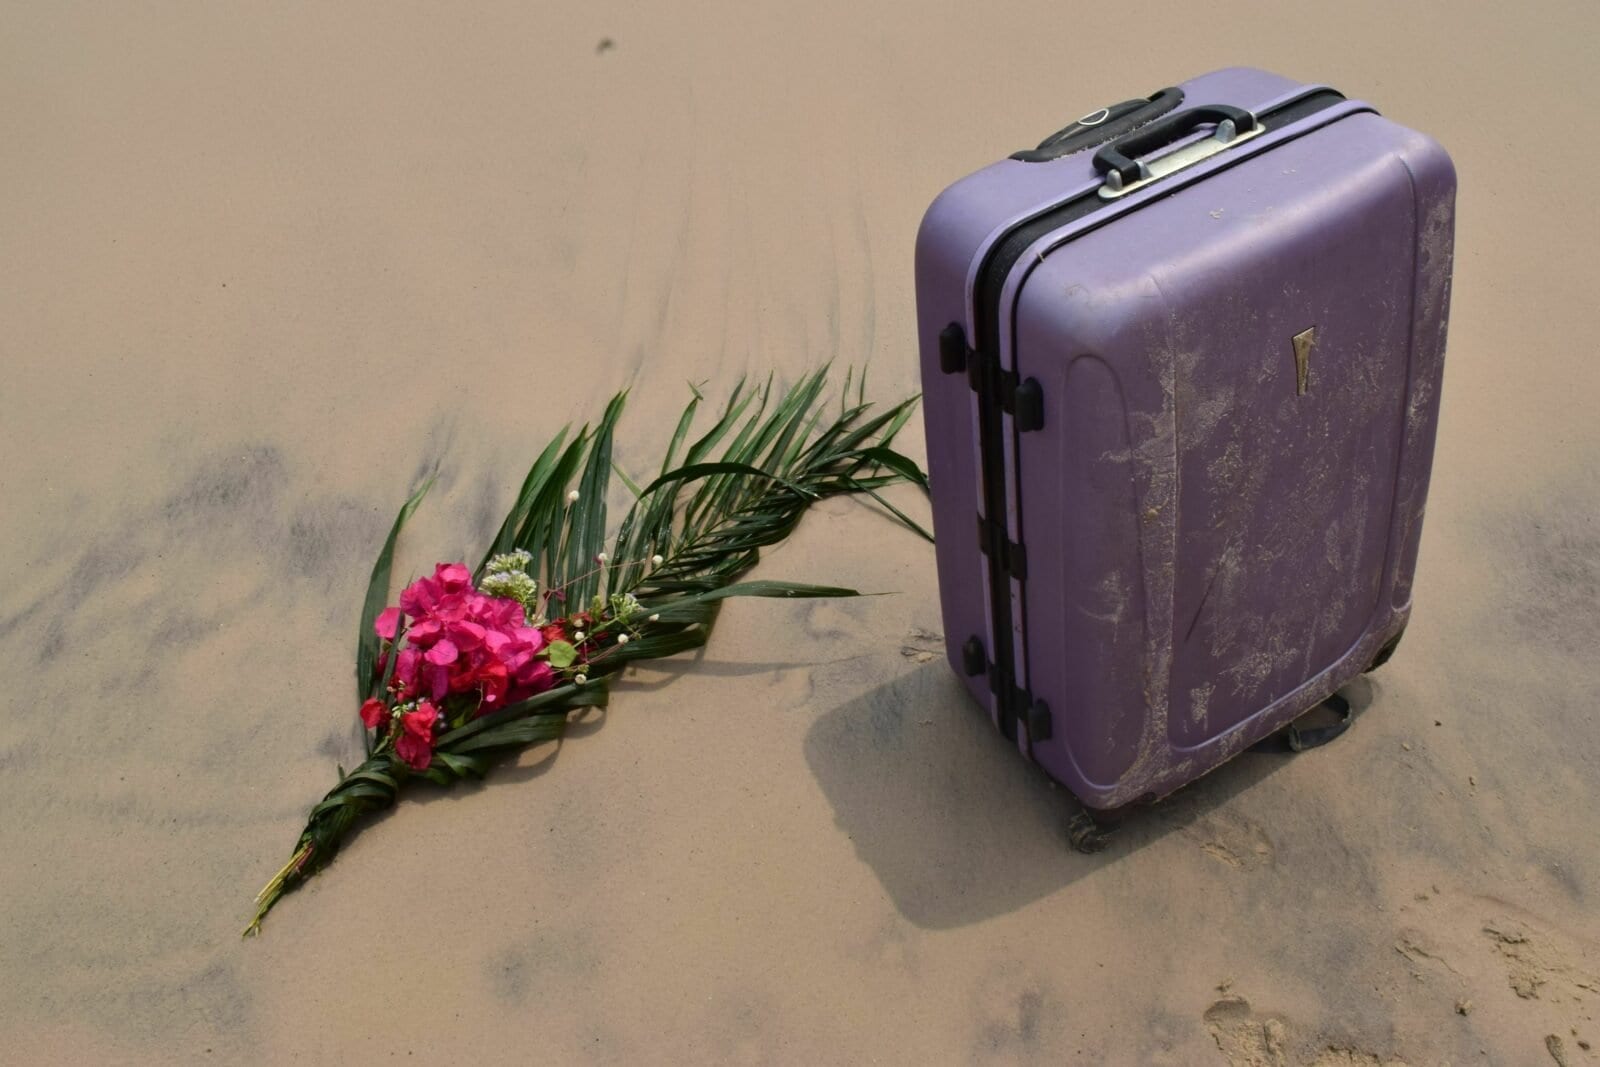 Une valise et un bouquet de fleurs sur le sable.